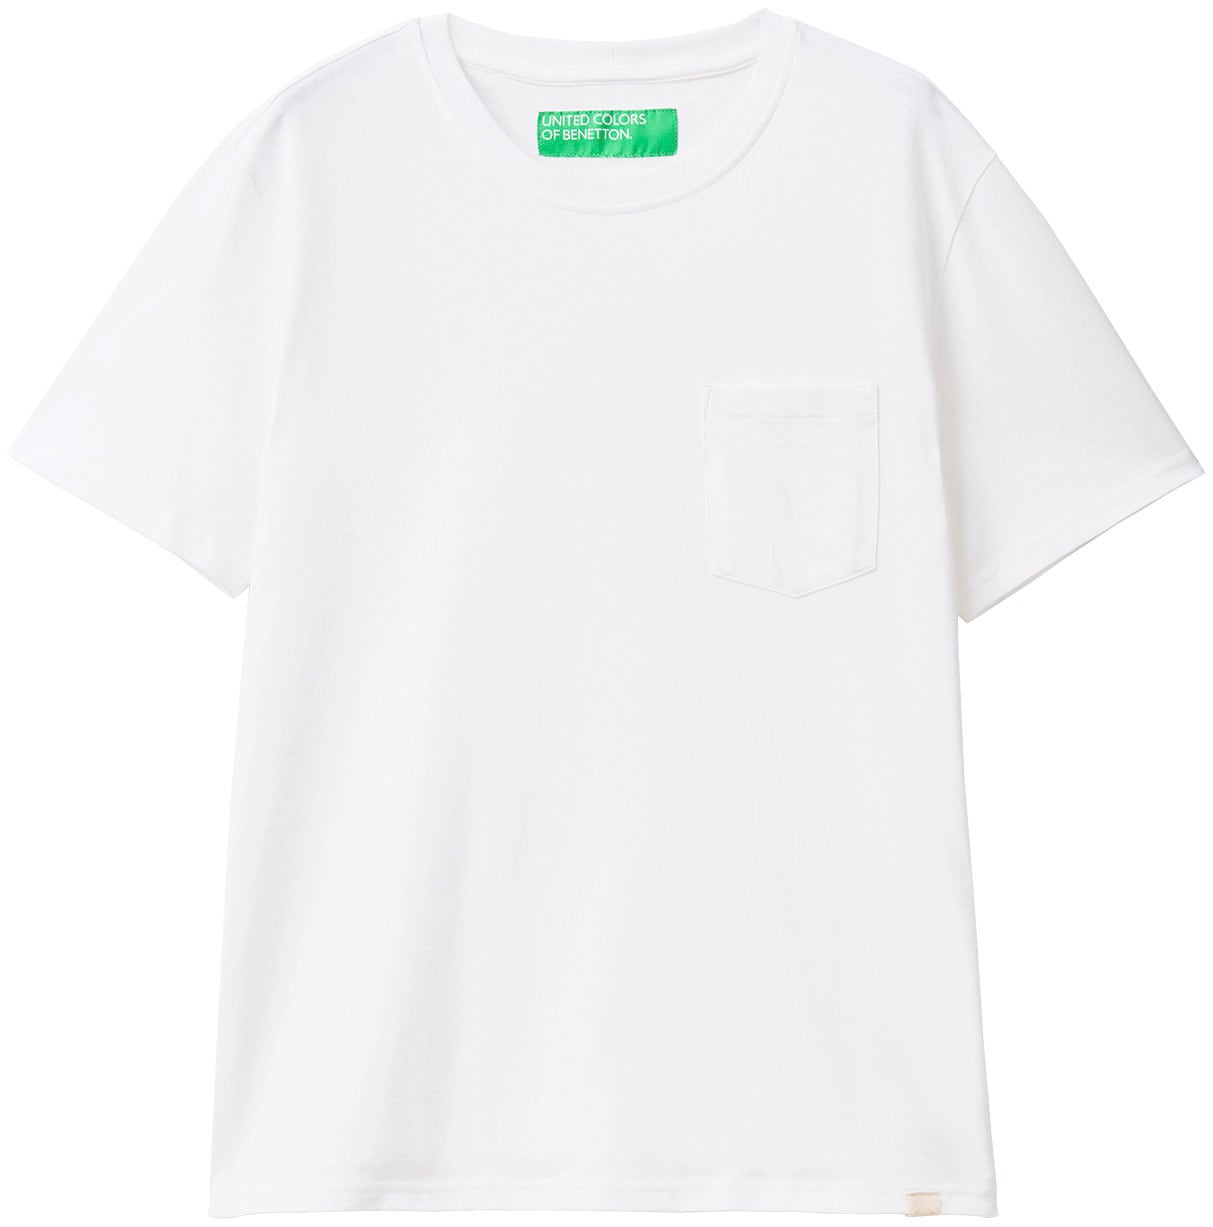 Brusttasche United kaufen Benetton of Colors mit T-Shirt, online aufgesetzter